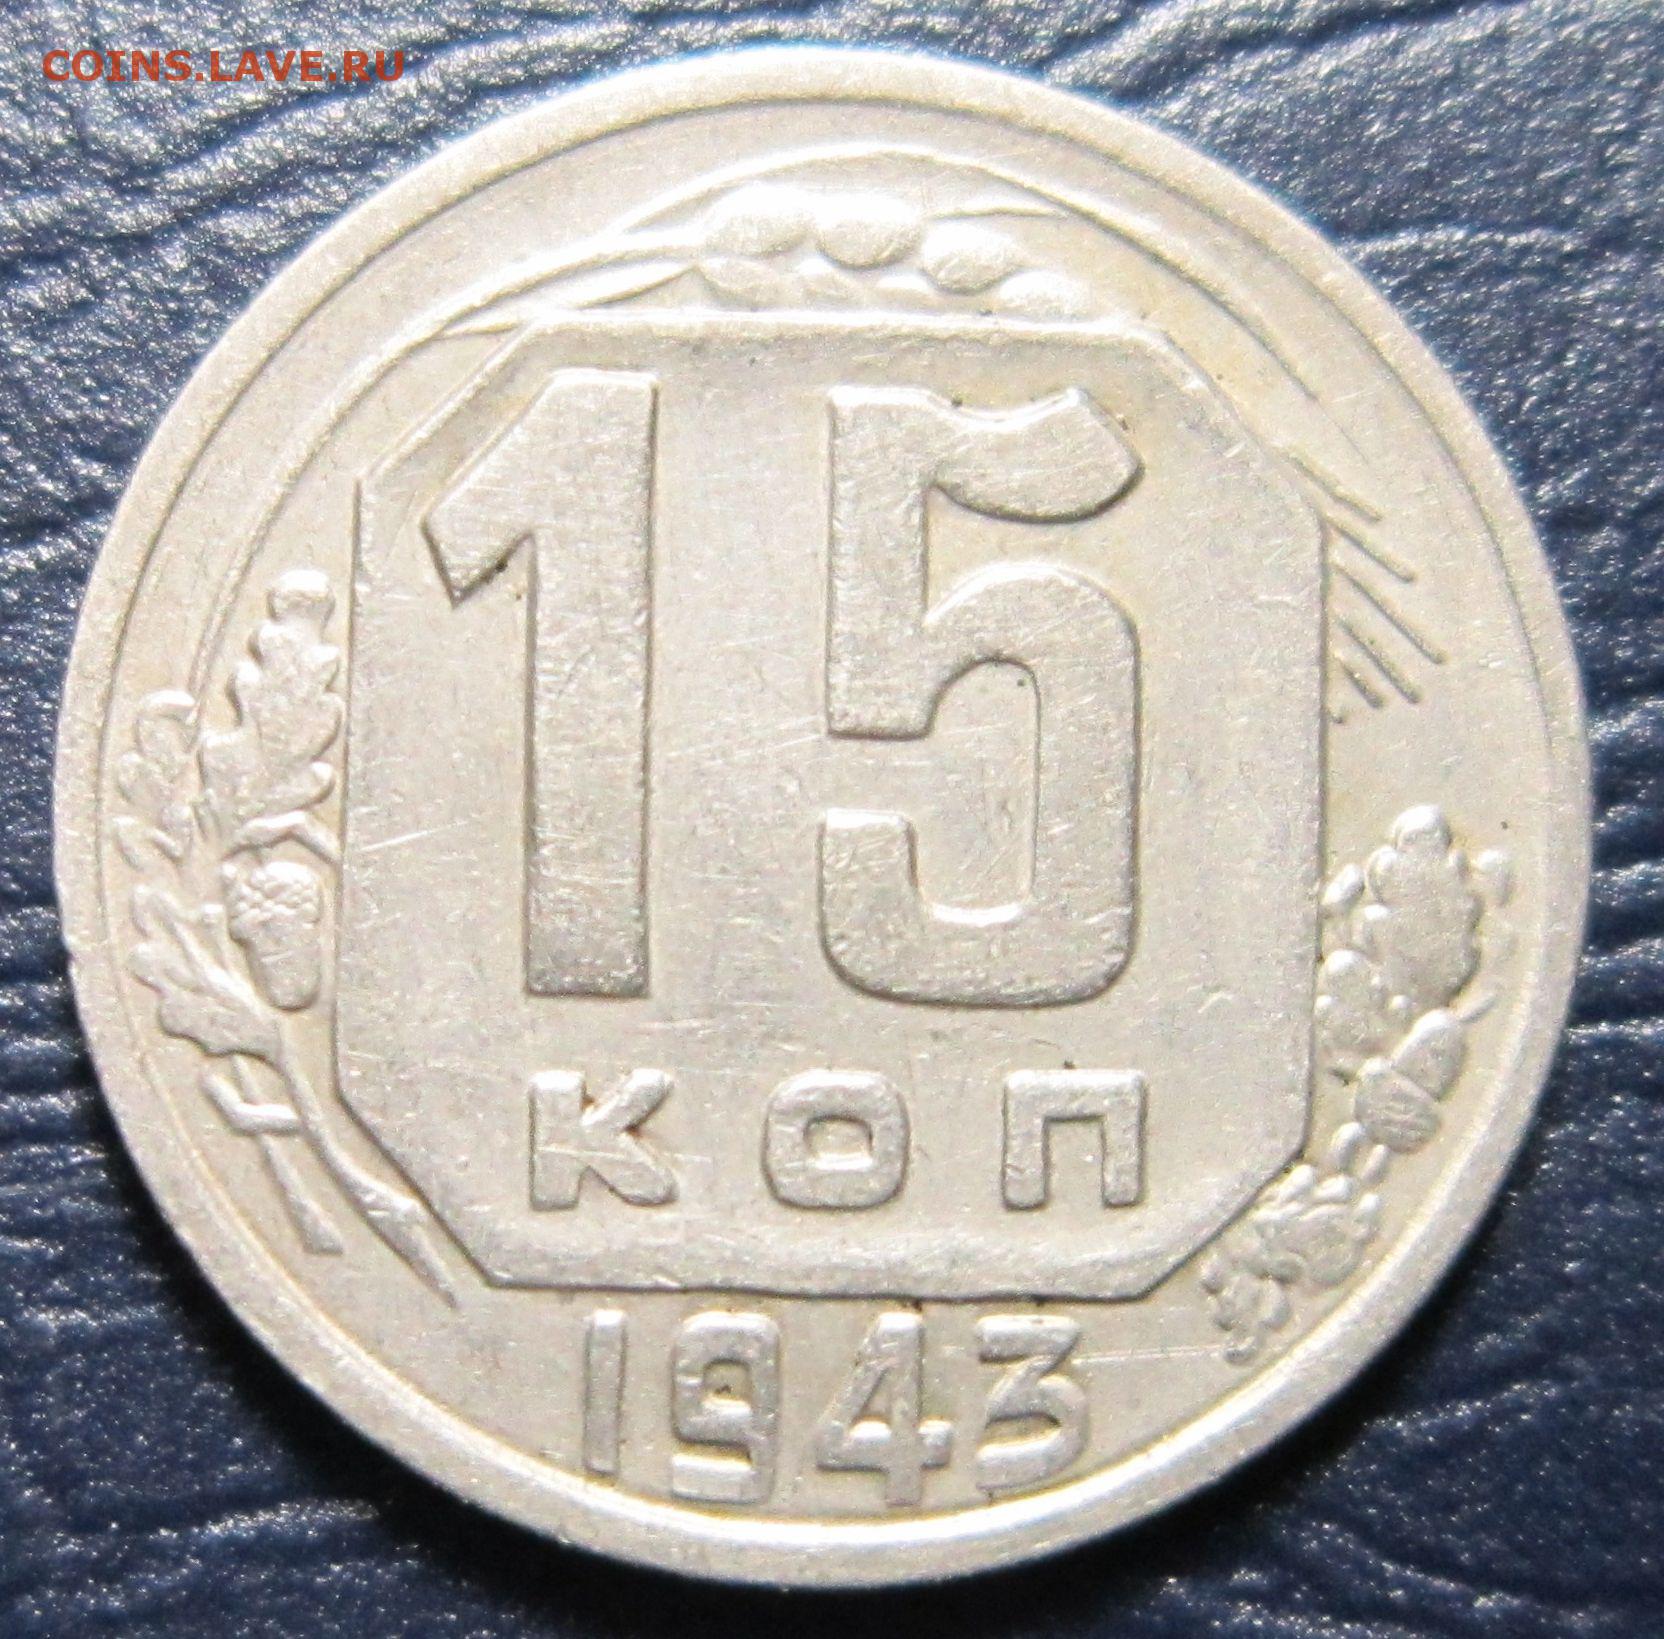 1956 год монеты цена. Монета 15 копеек 1957. 10 Копеек 1956 года. 10 Копеек 1935 года. Монета СССР 10 копеек 1956 год.